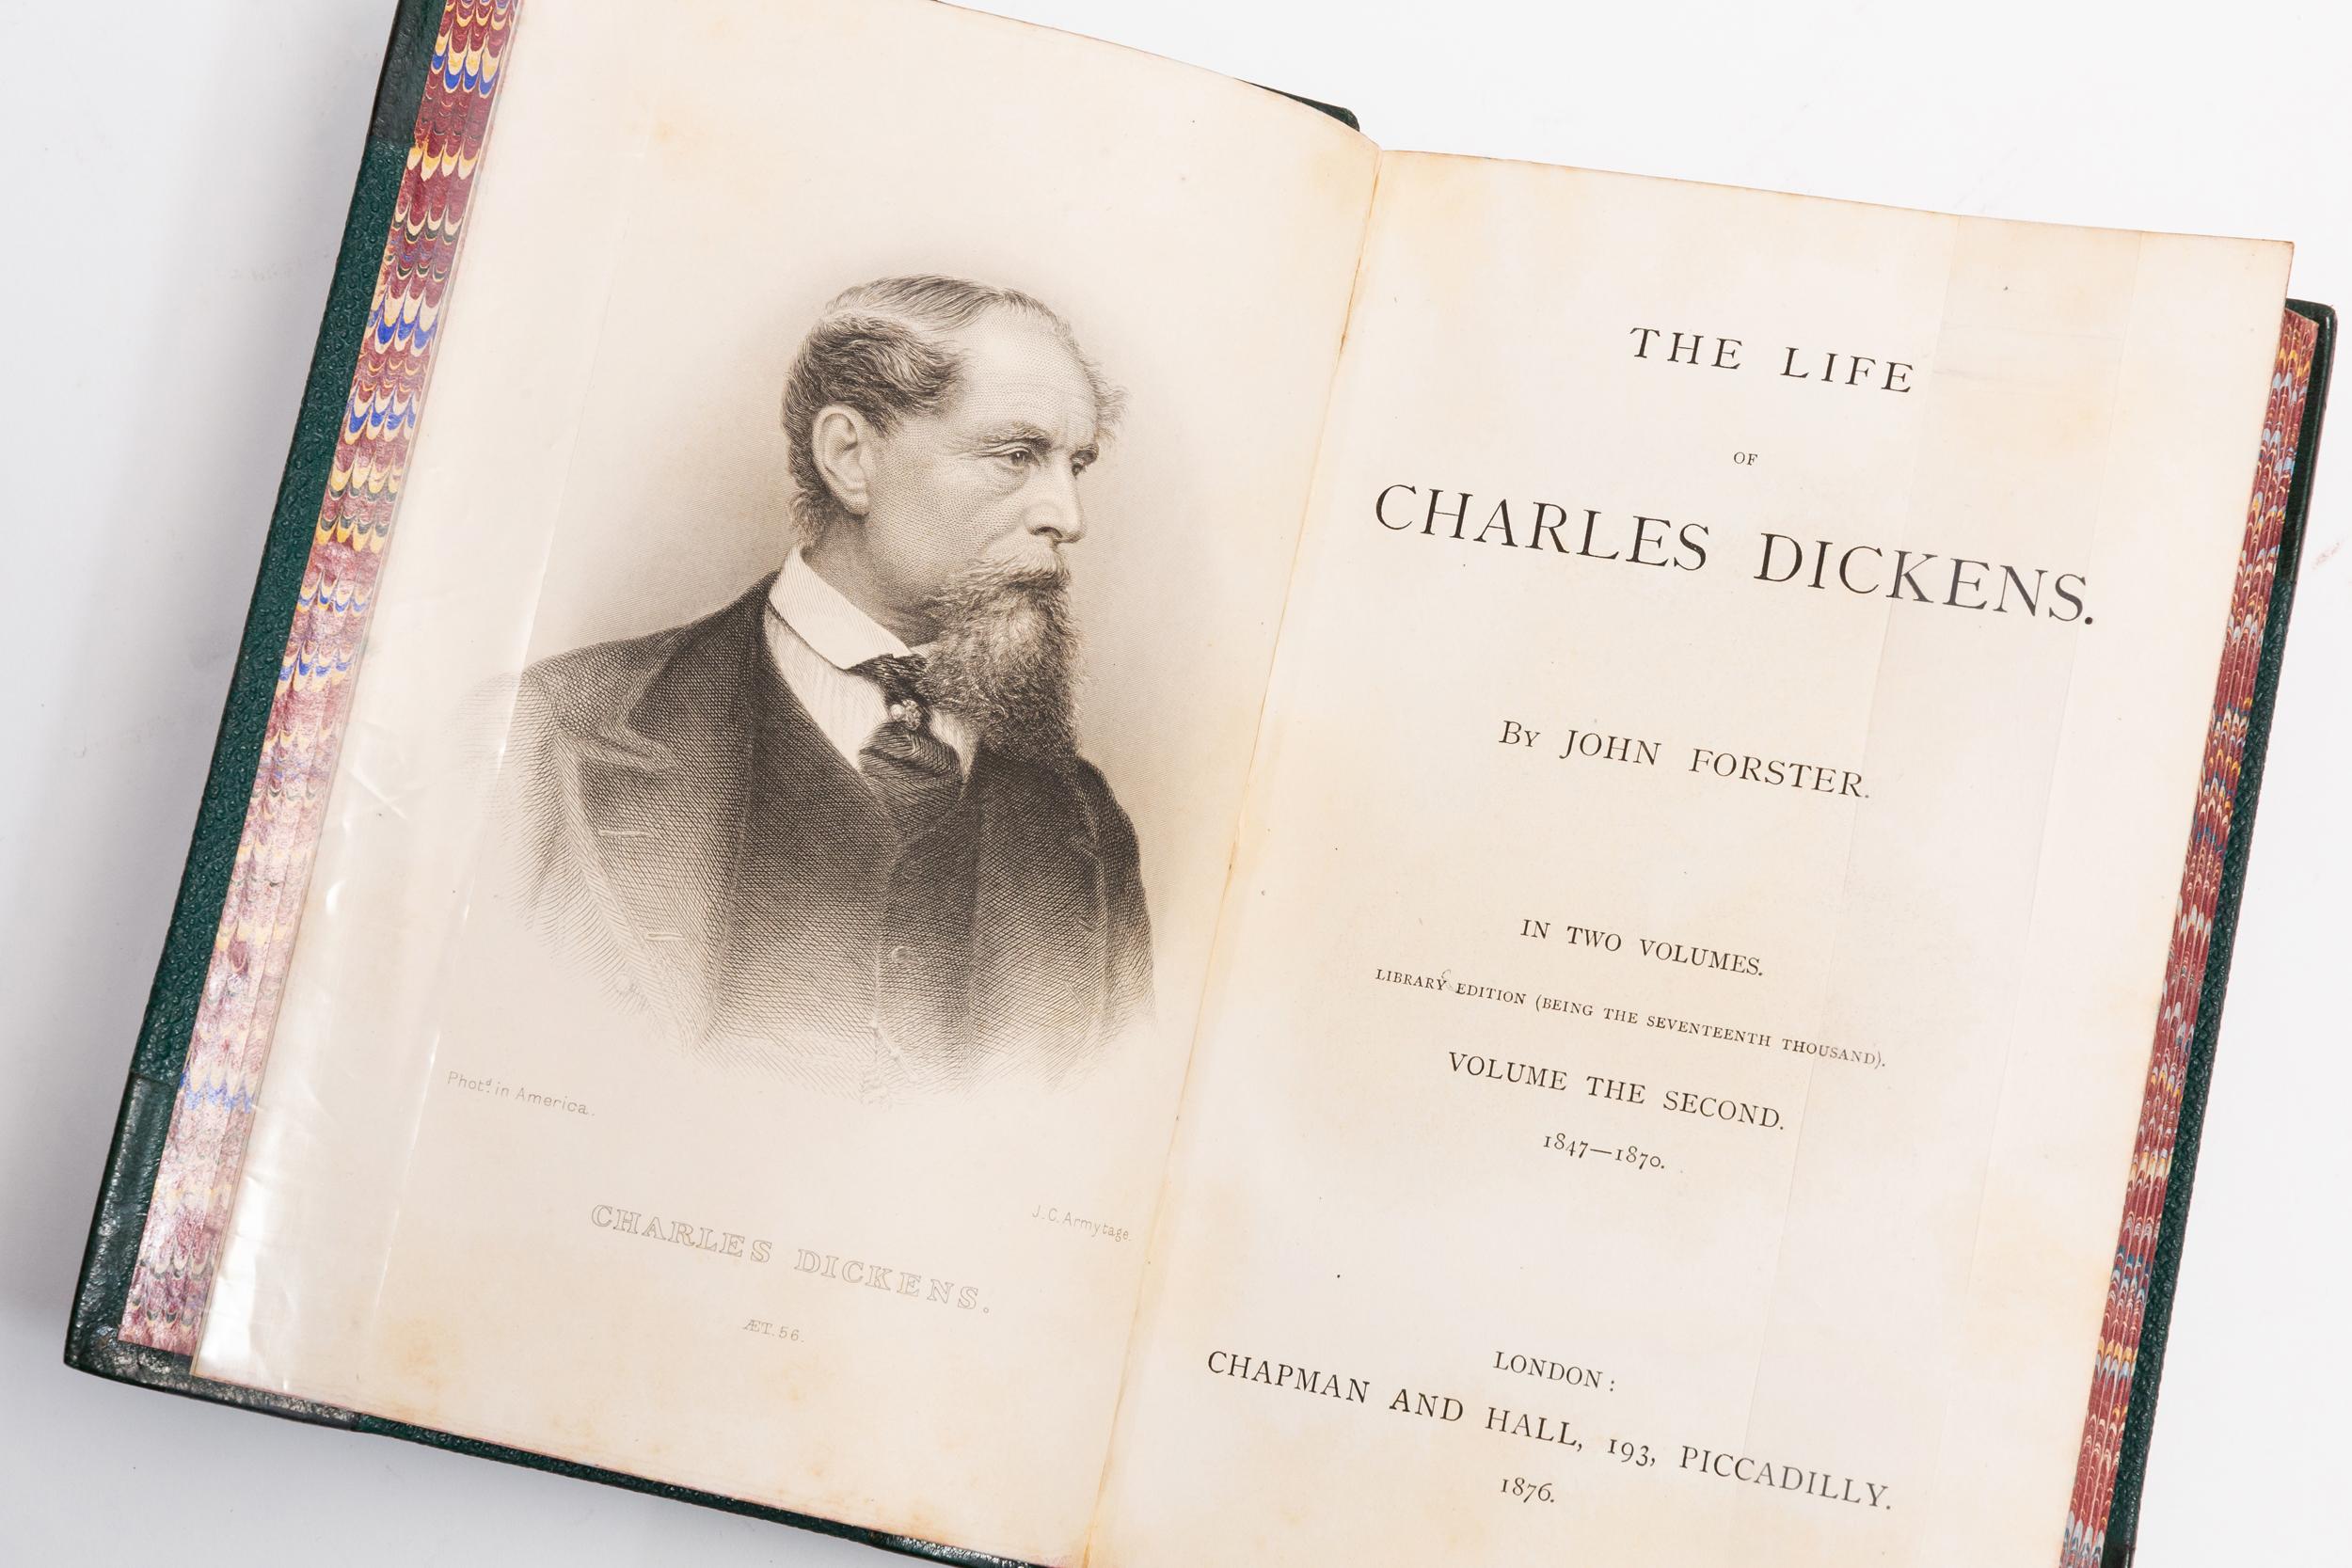 32 Volumes, Charles Dickens, Works of Charles Dickens 1